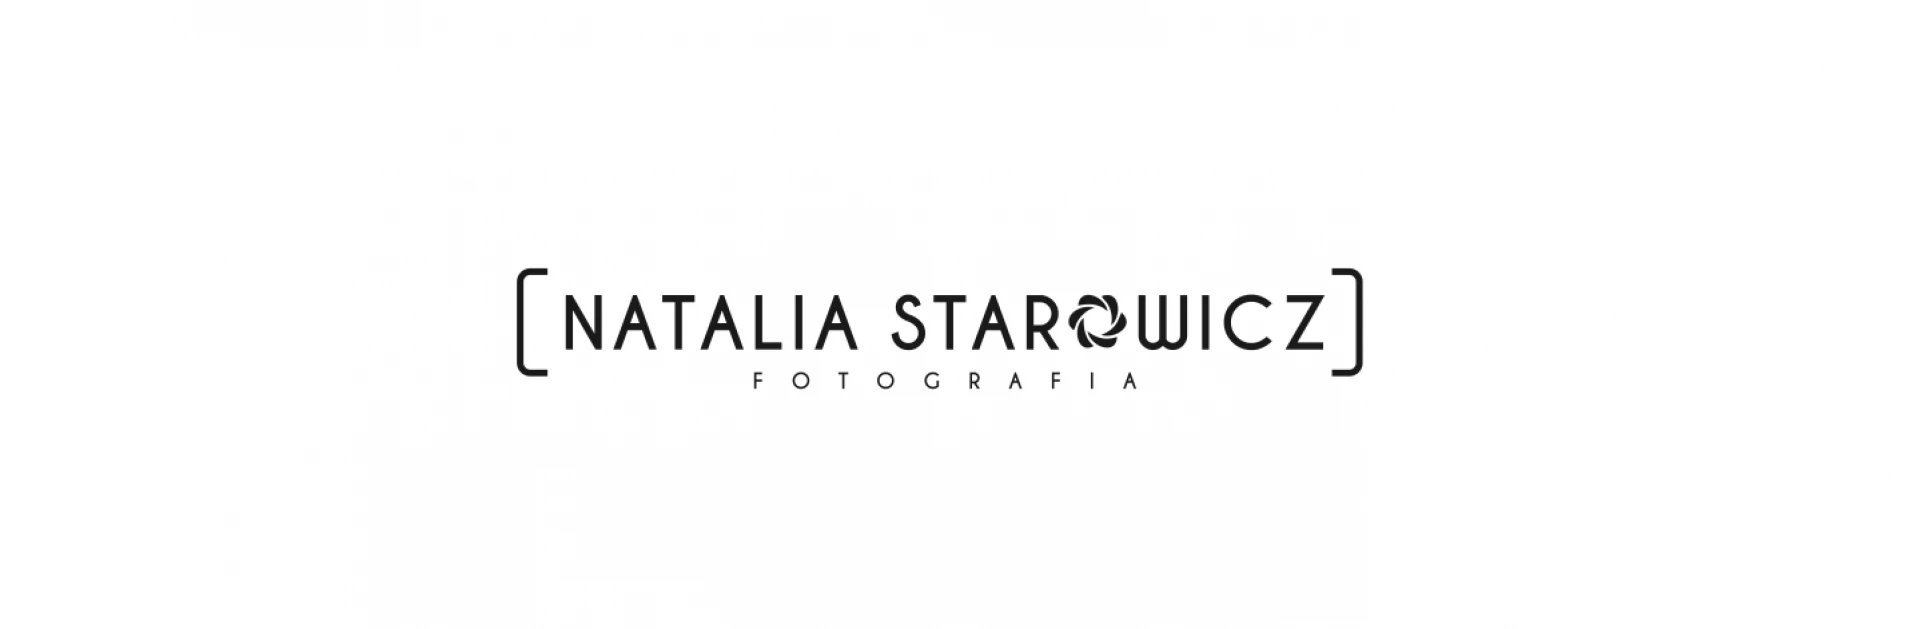 portfolio zdjecia znany fotograf natalia-starowicz-fotografia